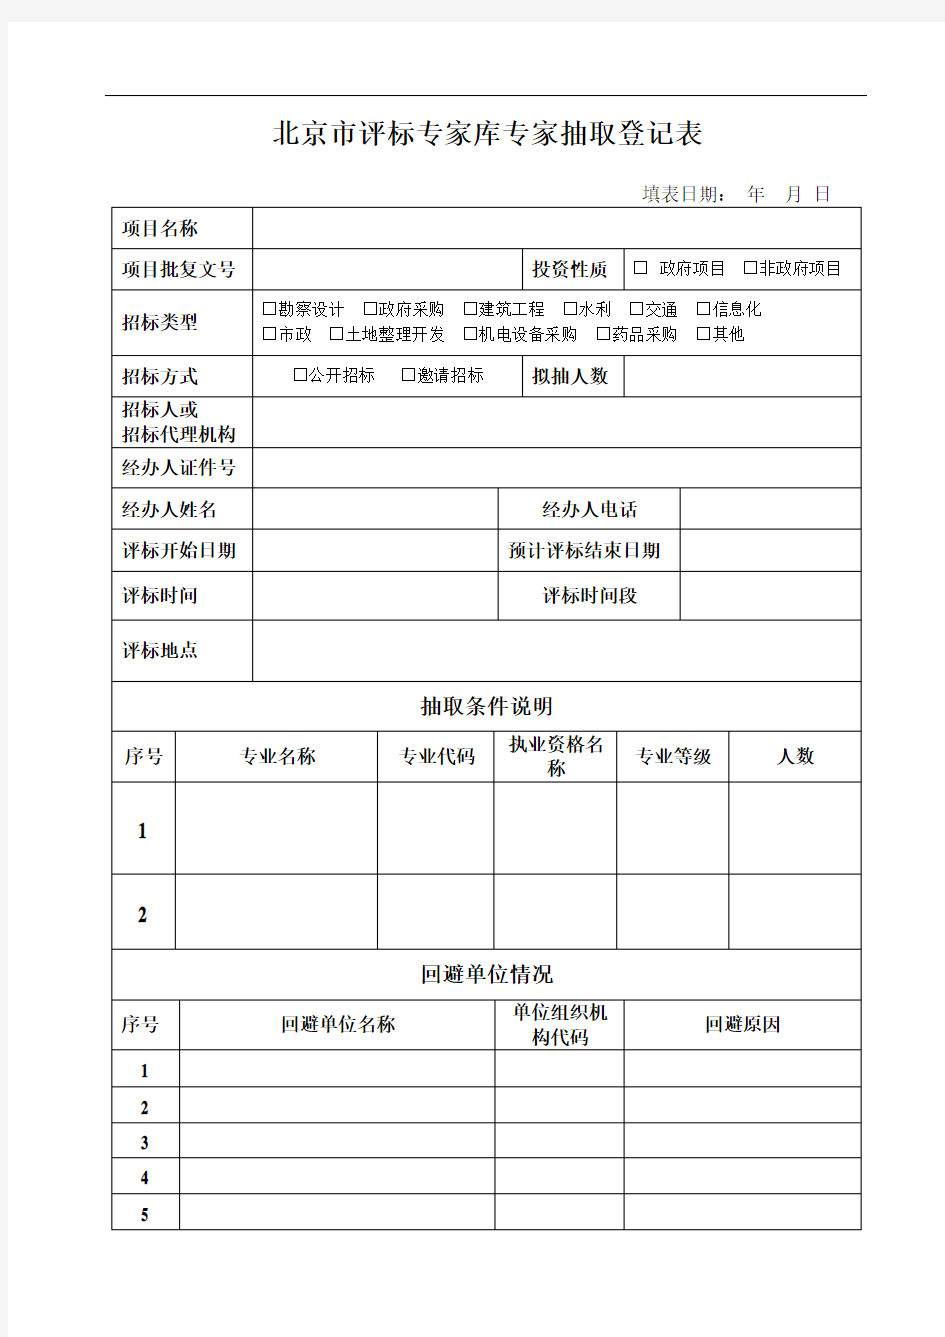 北京市评标专家库专家抽取登记表